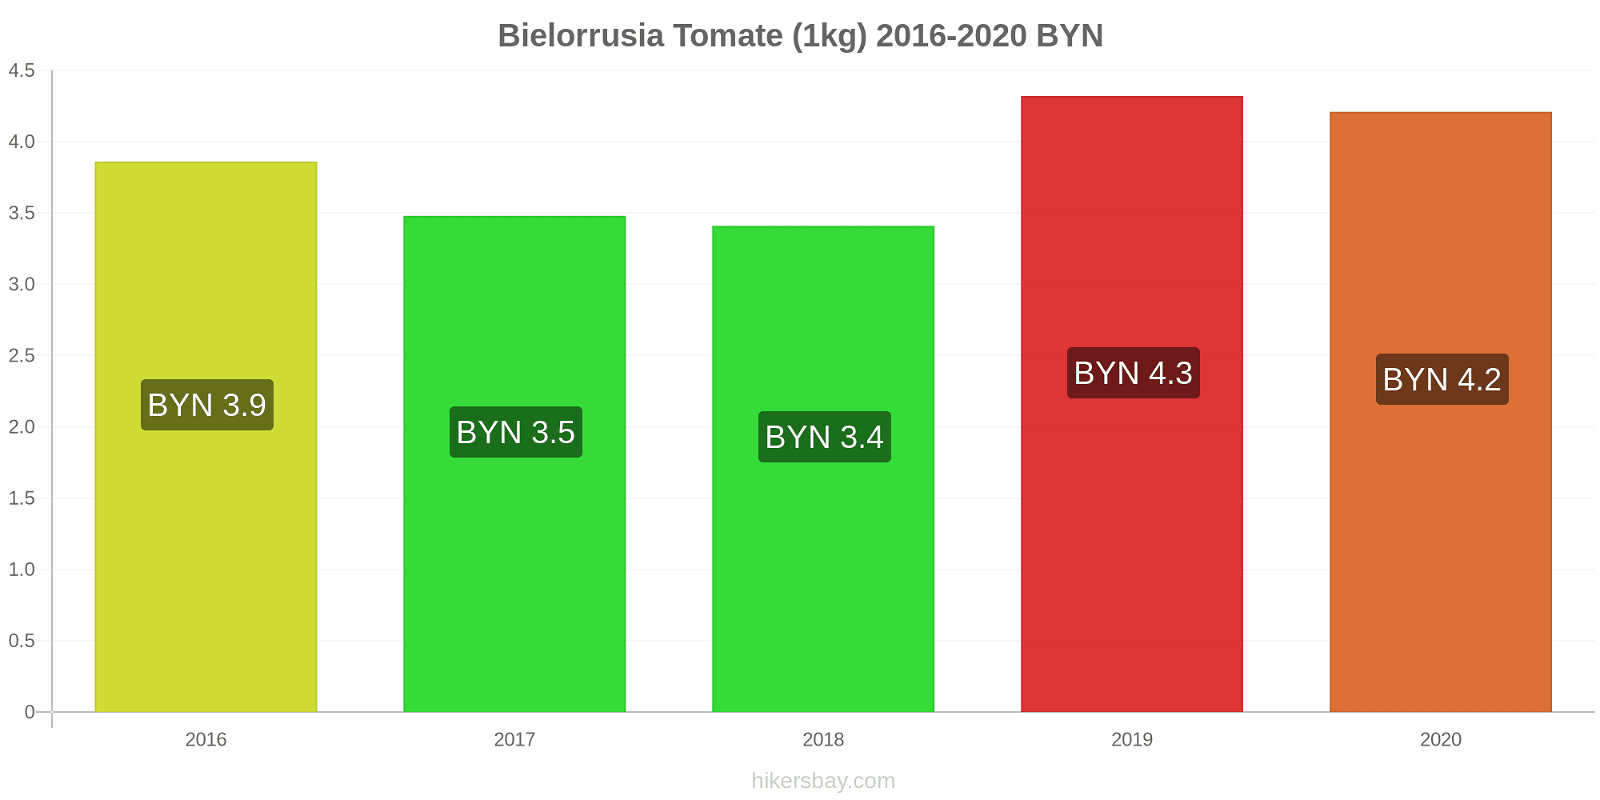 Bielorrusia cambios de precios Tomate (1kg) hikersbay.com